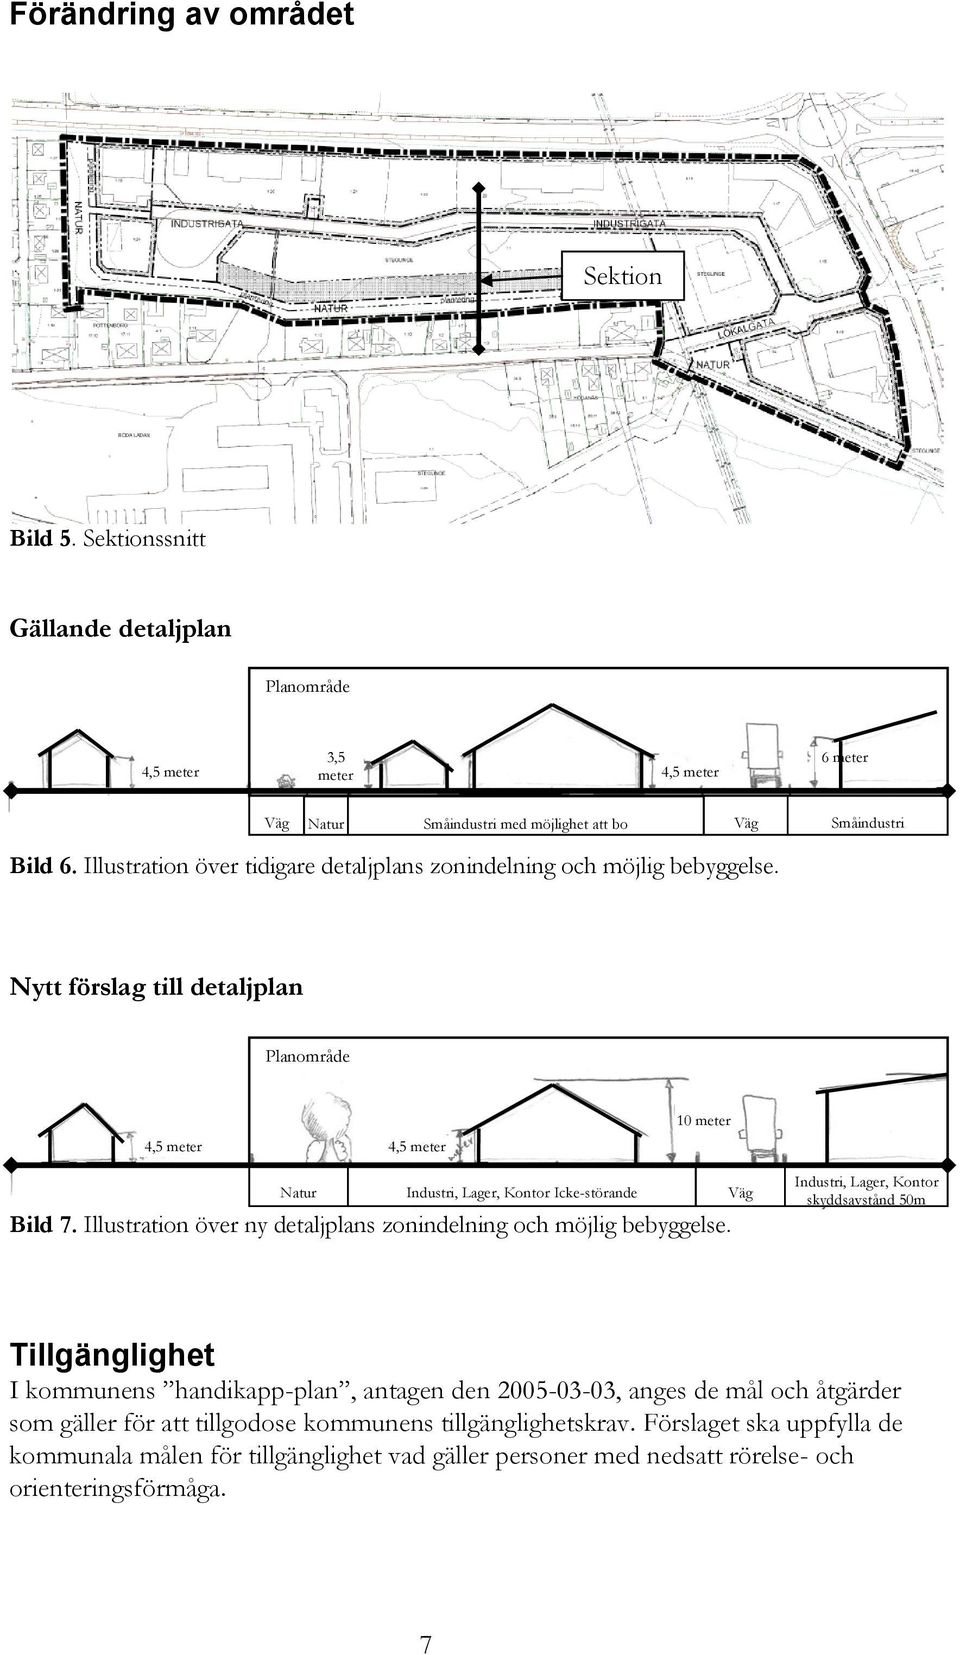 Nytt förslag till detaljplan Planområde 4,5 meter 4,5 meter 10 meter Natur Industri, Lager, Kontor Icke-störande Väg Bild 7. Illustration över ny detaljplans zonindelning och möjlig bebyggelse.